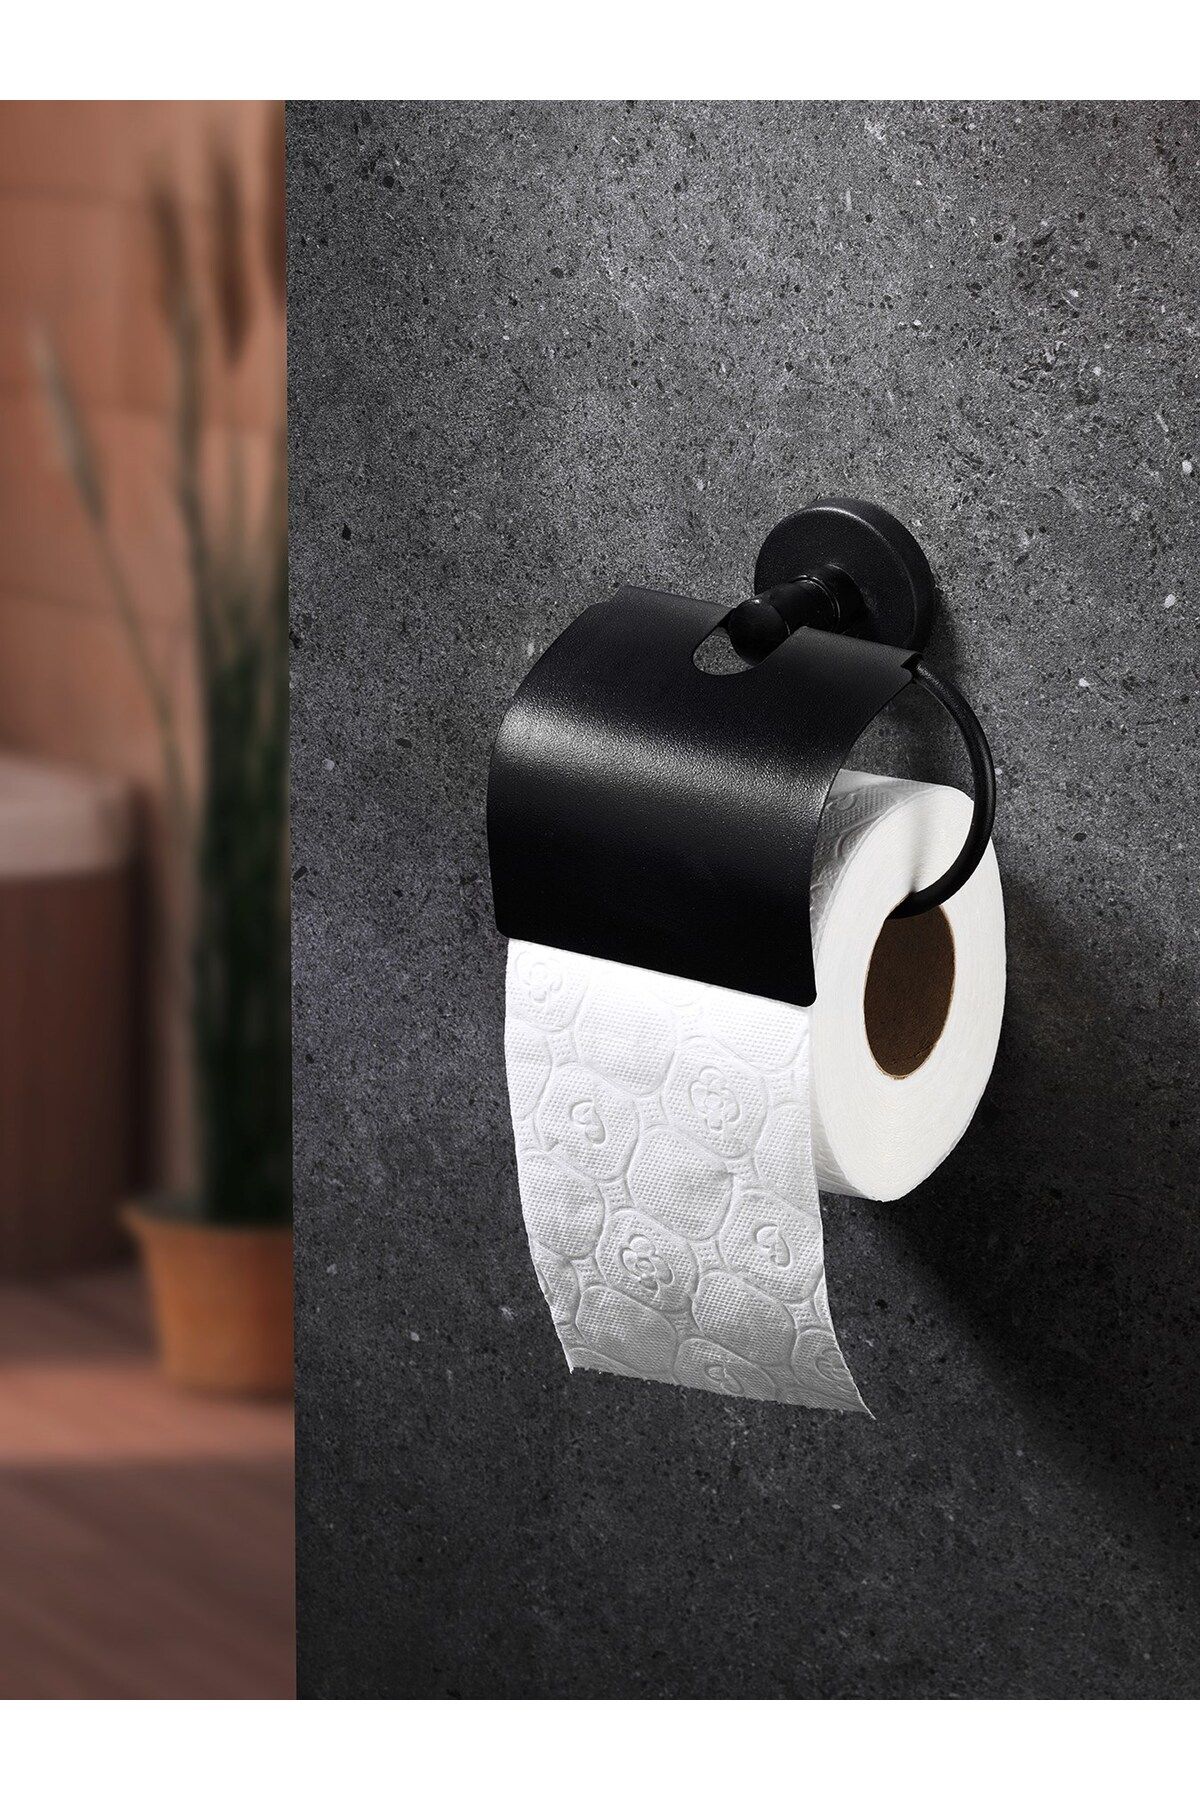 Sas Haus Yapışkanlı Siyah Geniş Kapaklı Tuvalet Kağıtlığı Wc Kağıtlık Tuvalet Kağıdı Askısı